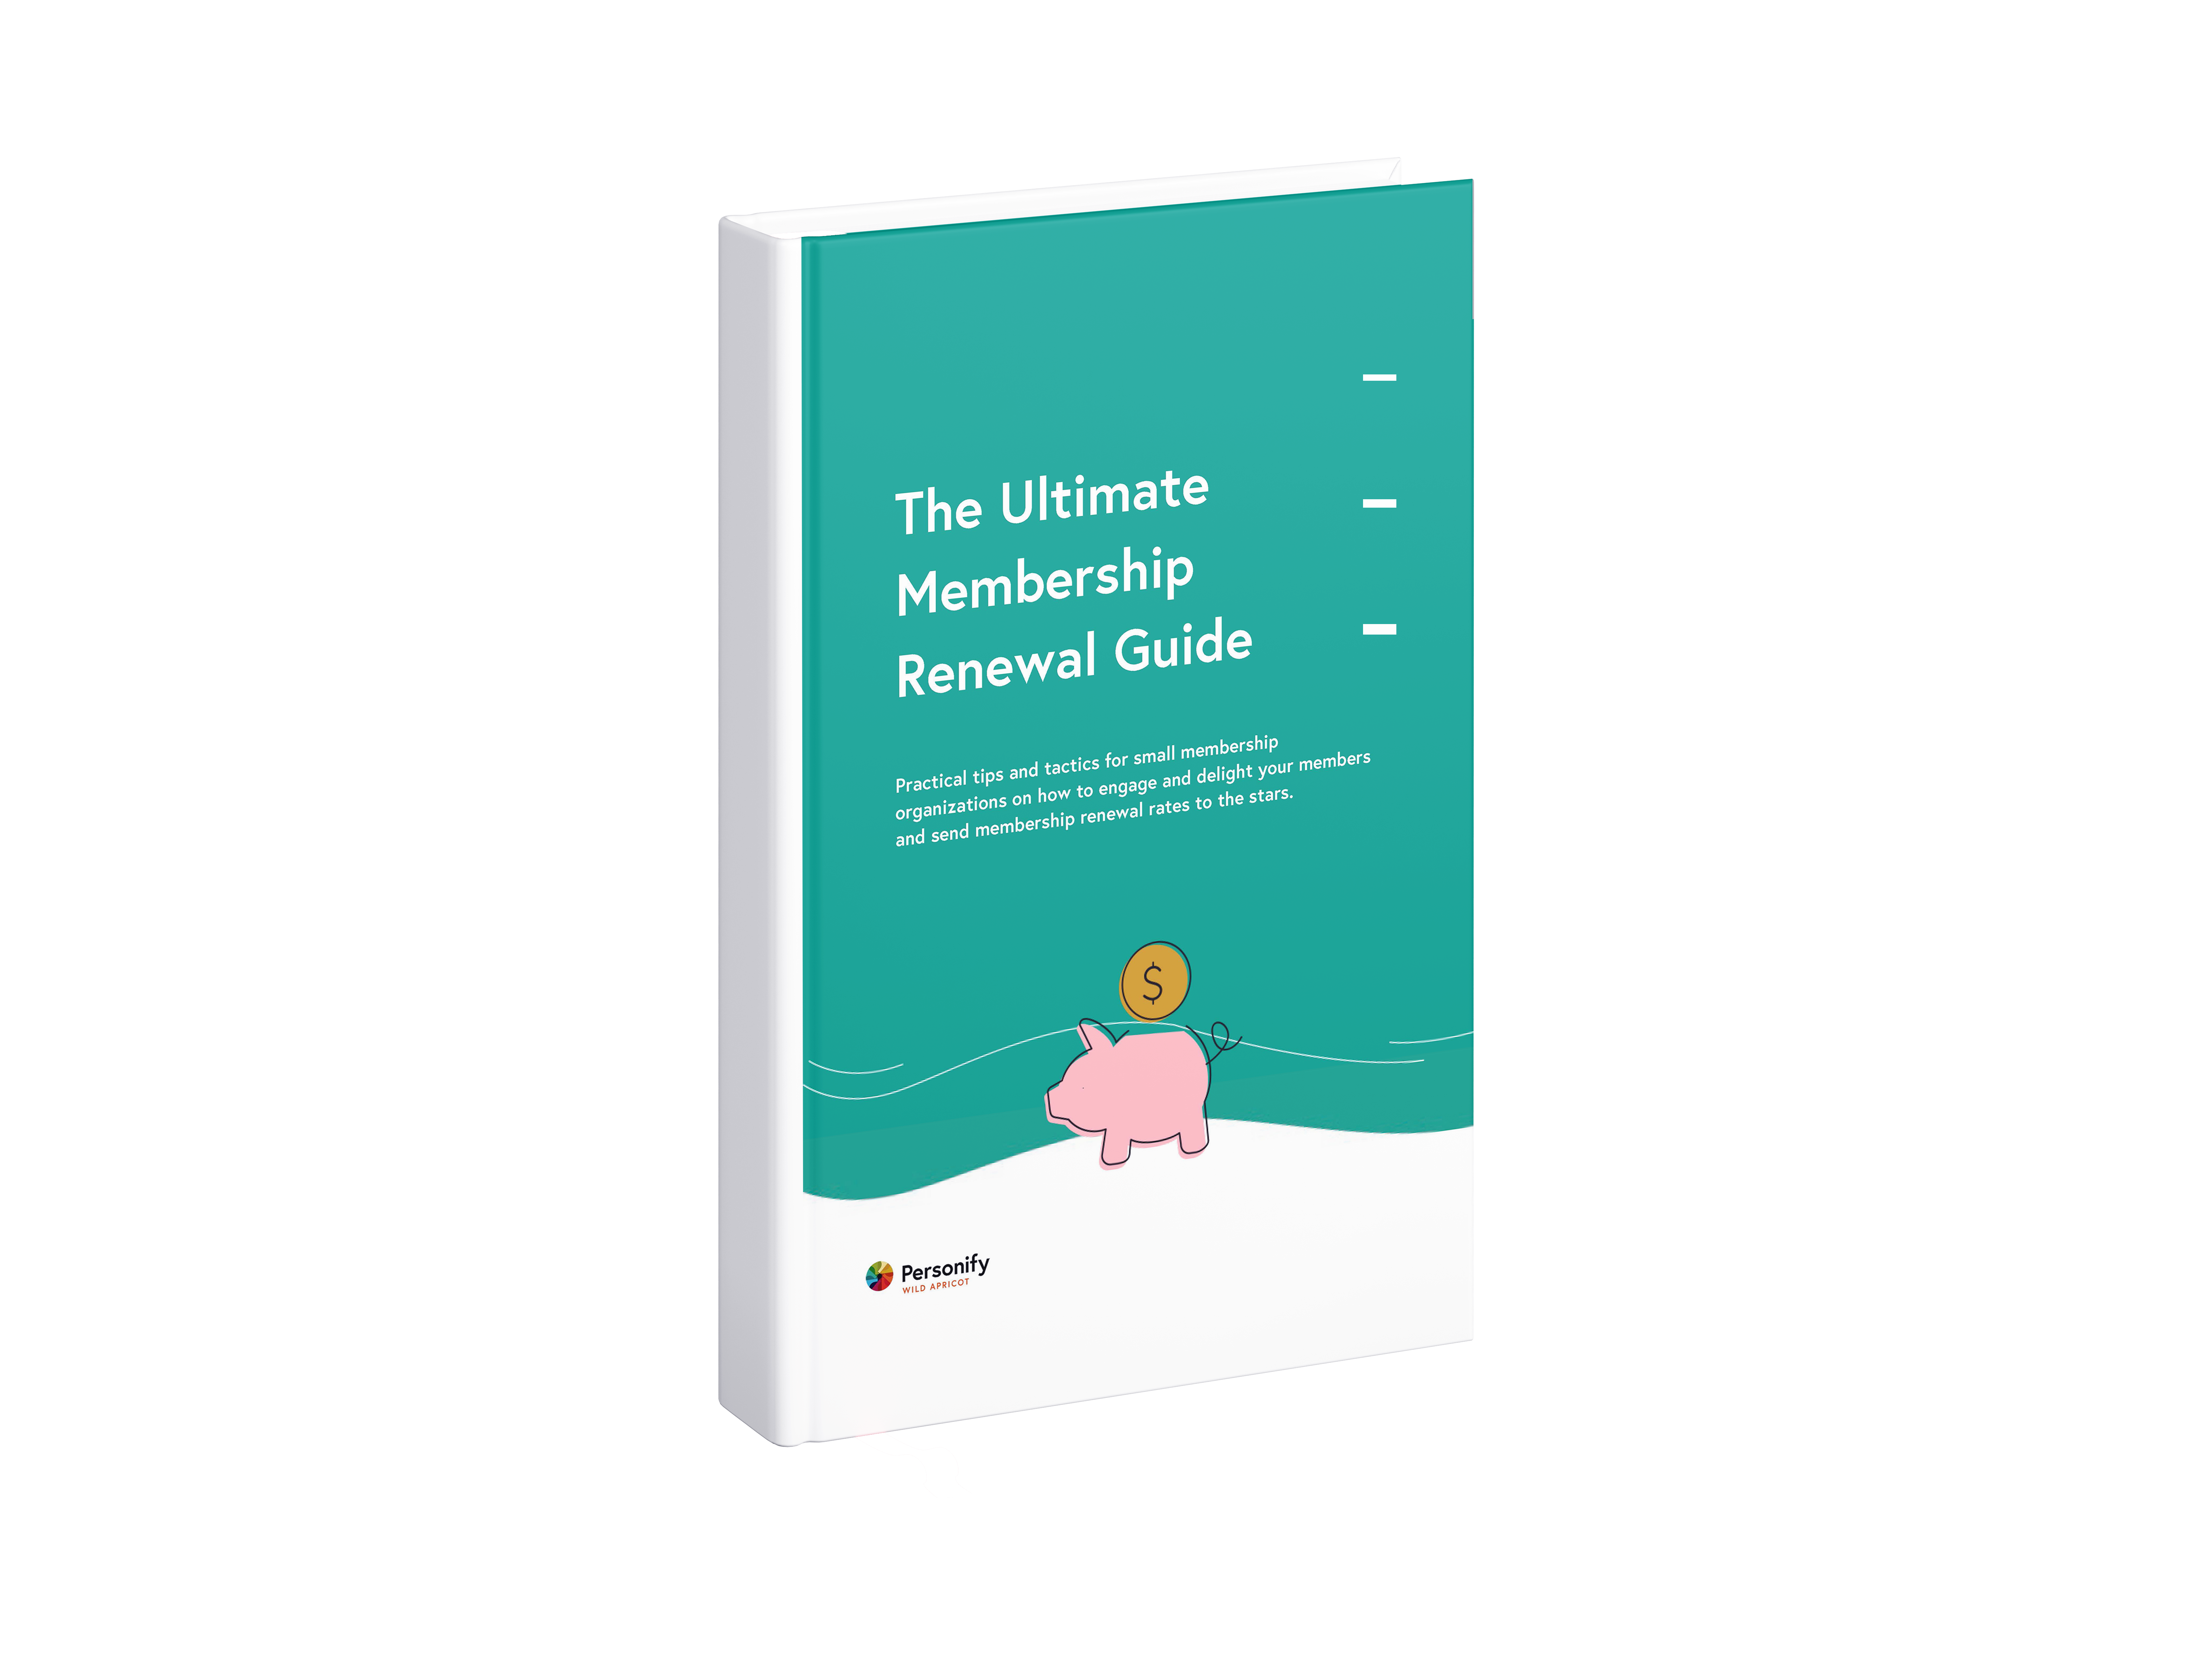 The Ultimate Membership Renewal Guide